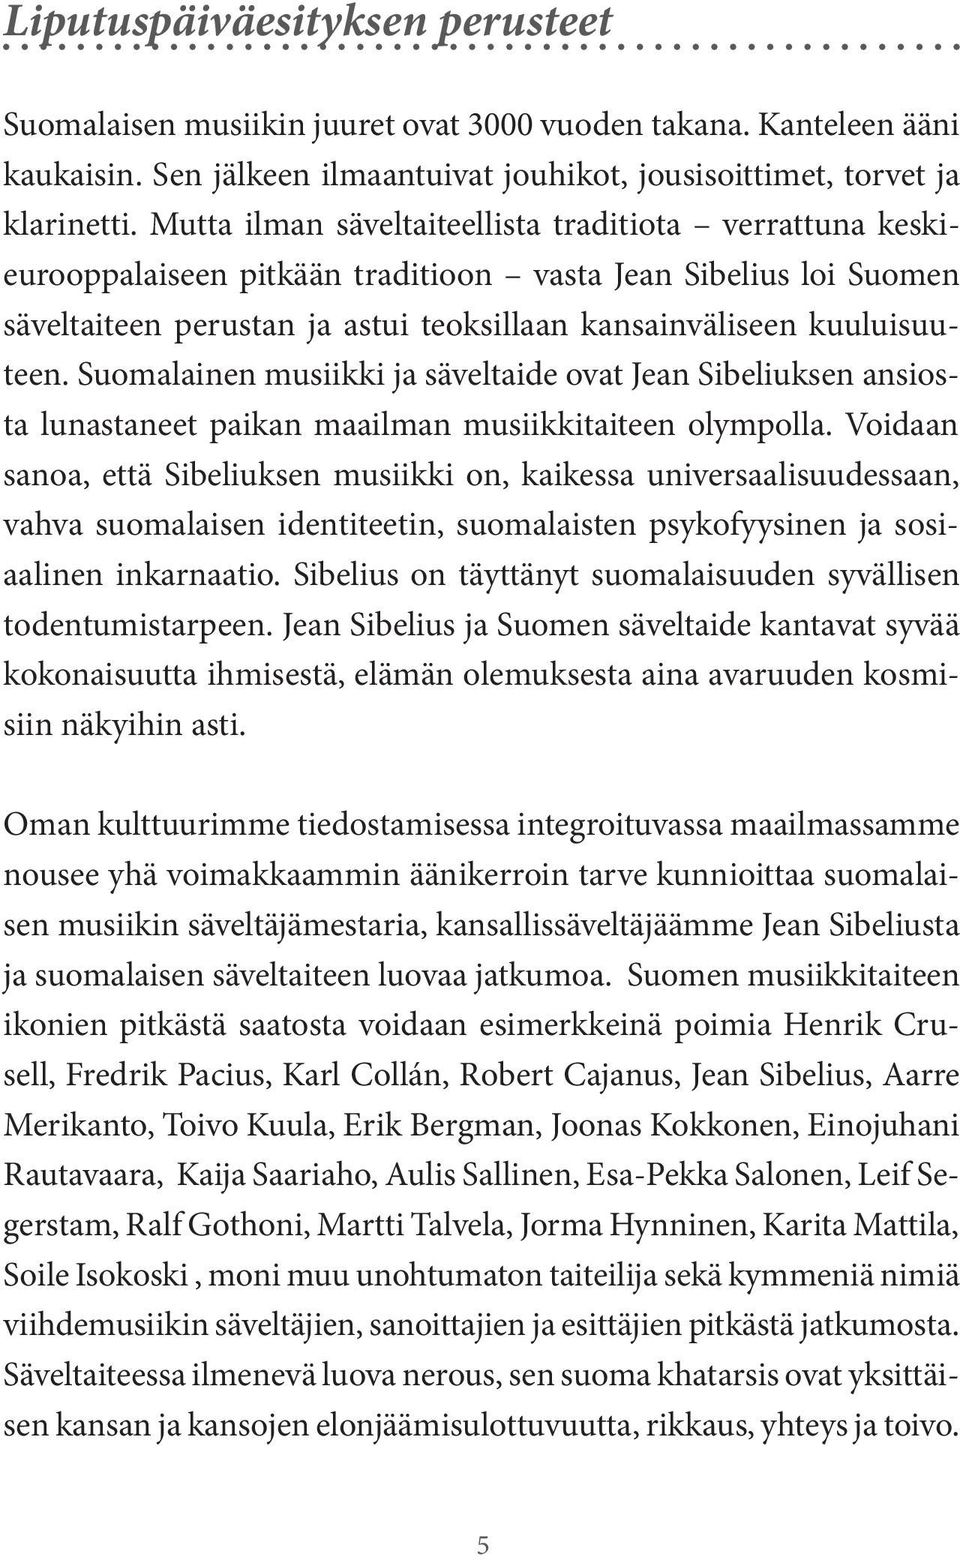 Suomalainen musiikki ja säveltaide ovat Jean Sibeliuksen ansiosta lunastaneet paikan maailman musiikkitaiteen olympolla.